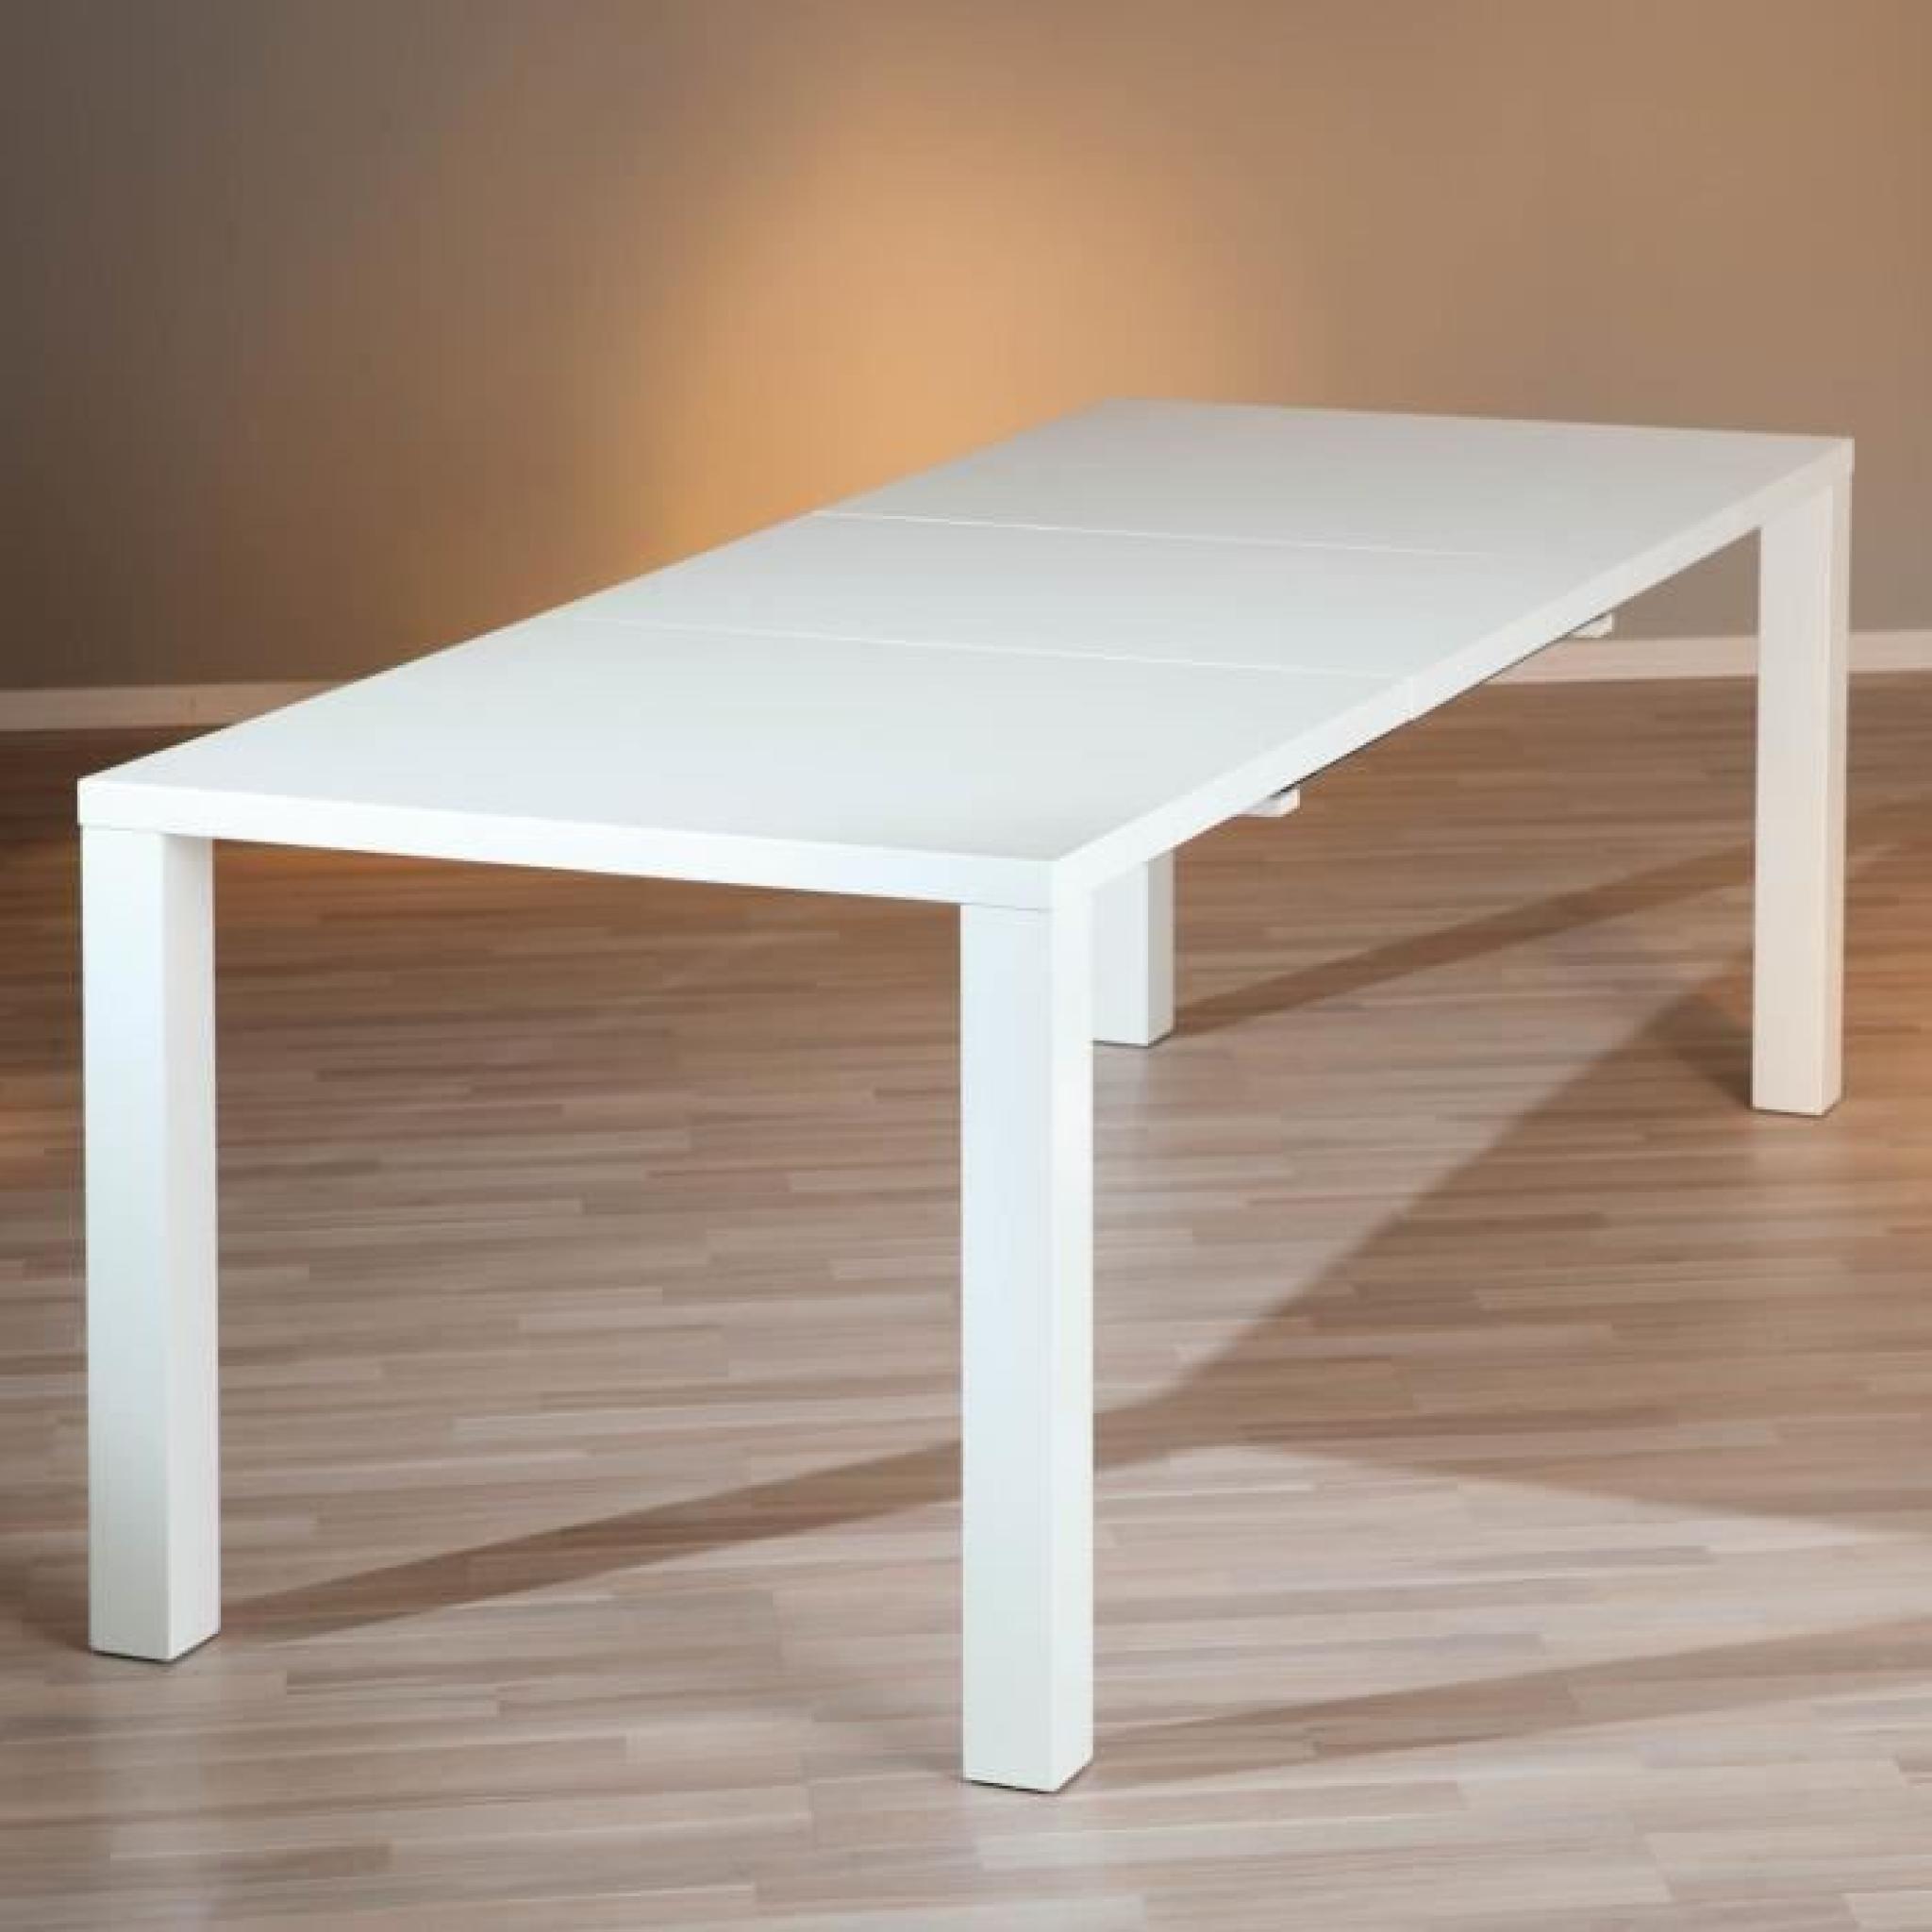 Table rectangulaire meuble cuisine salle manger design extensible BLANC LAQUE pas cher